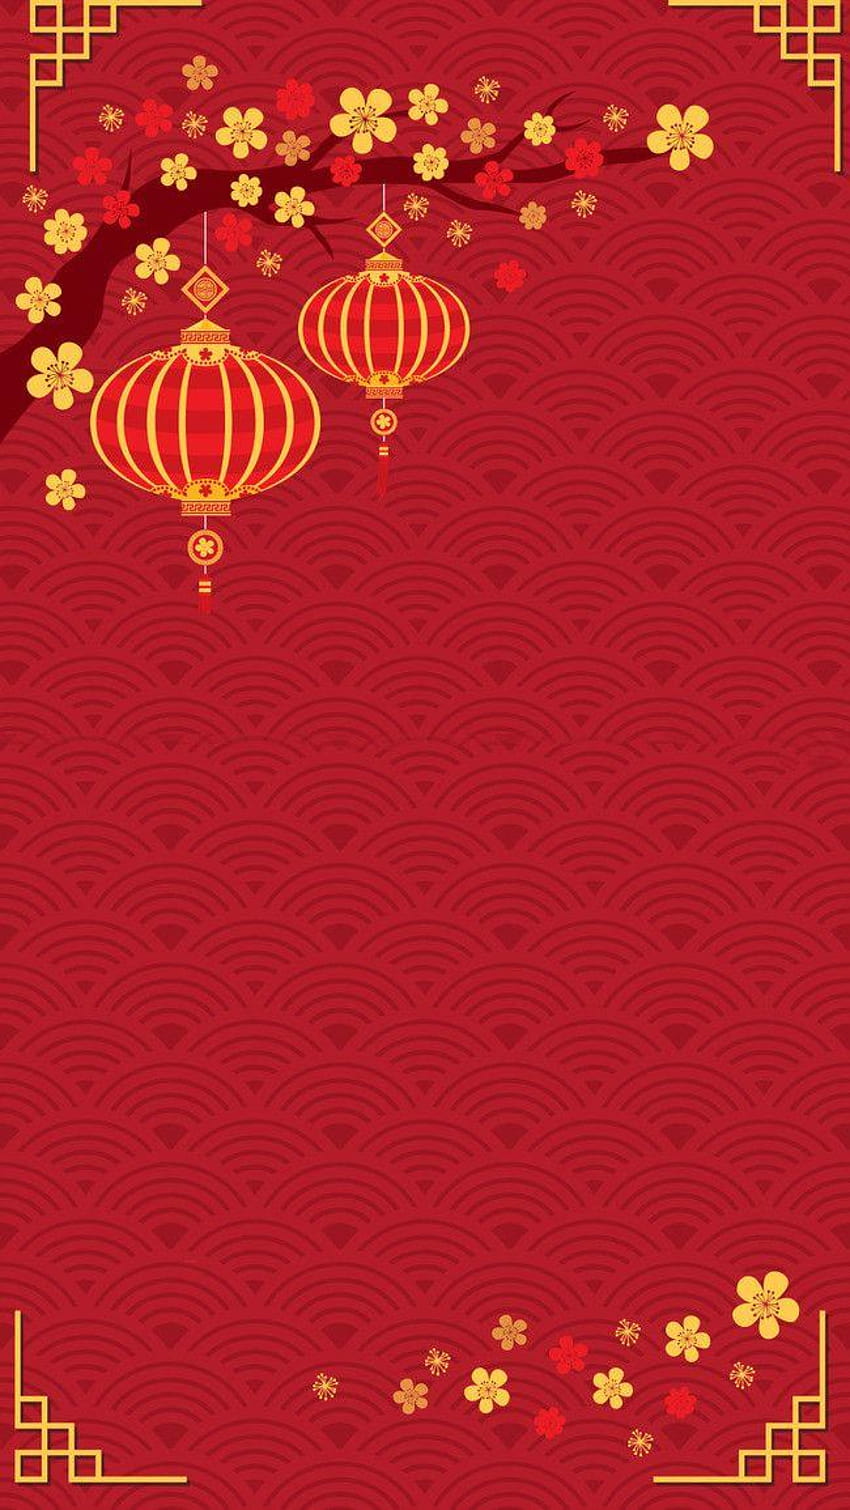 Sfondi festivi per il capodanno cinese Psd a strati nel 2019 ..., telefono cny 2020 Sfondo del telefono HD